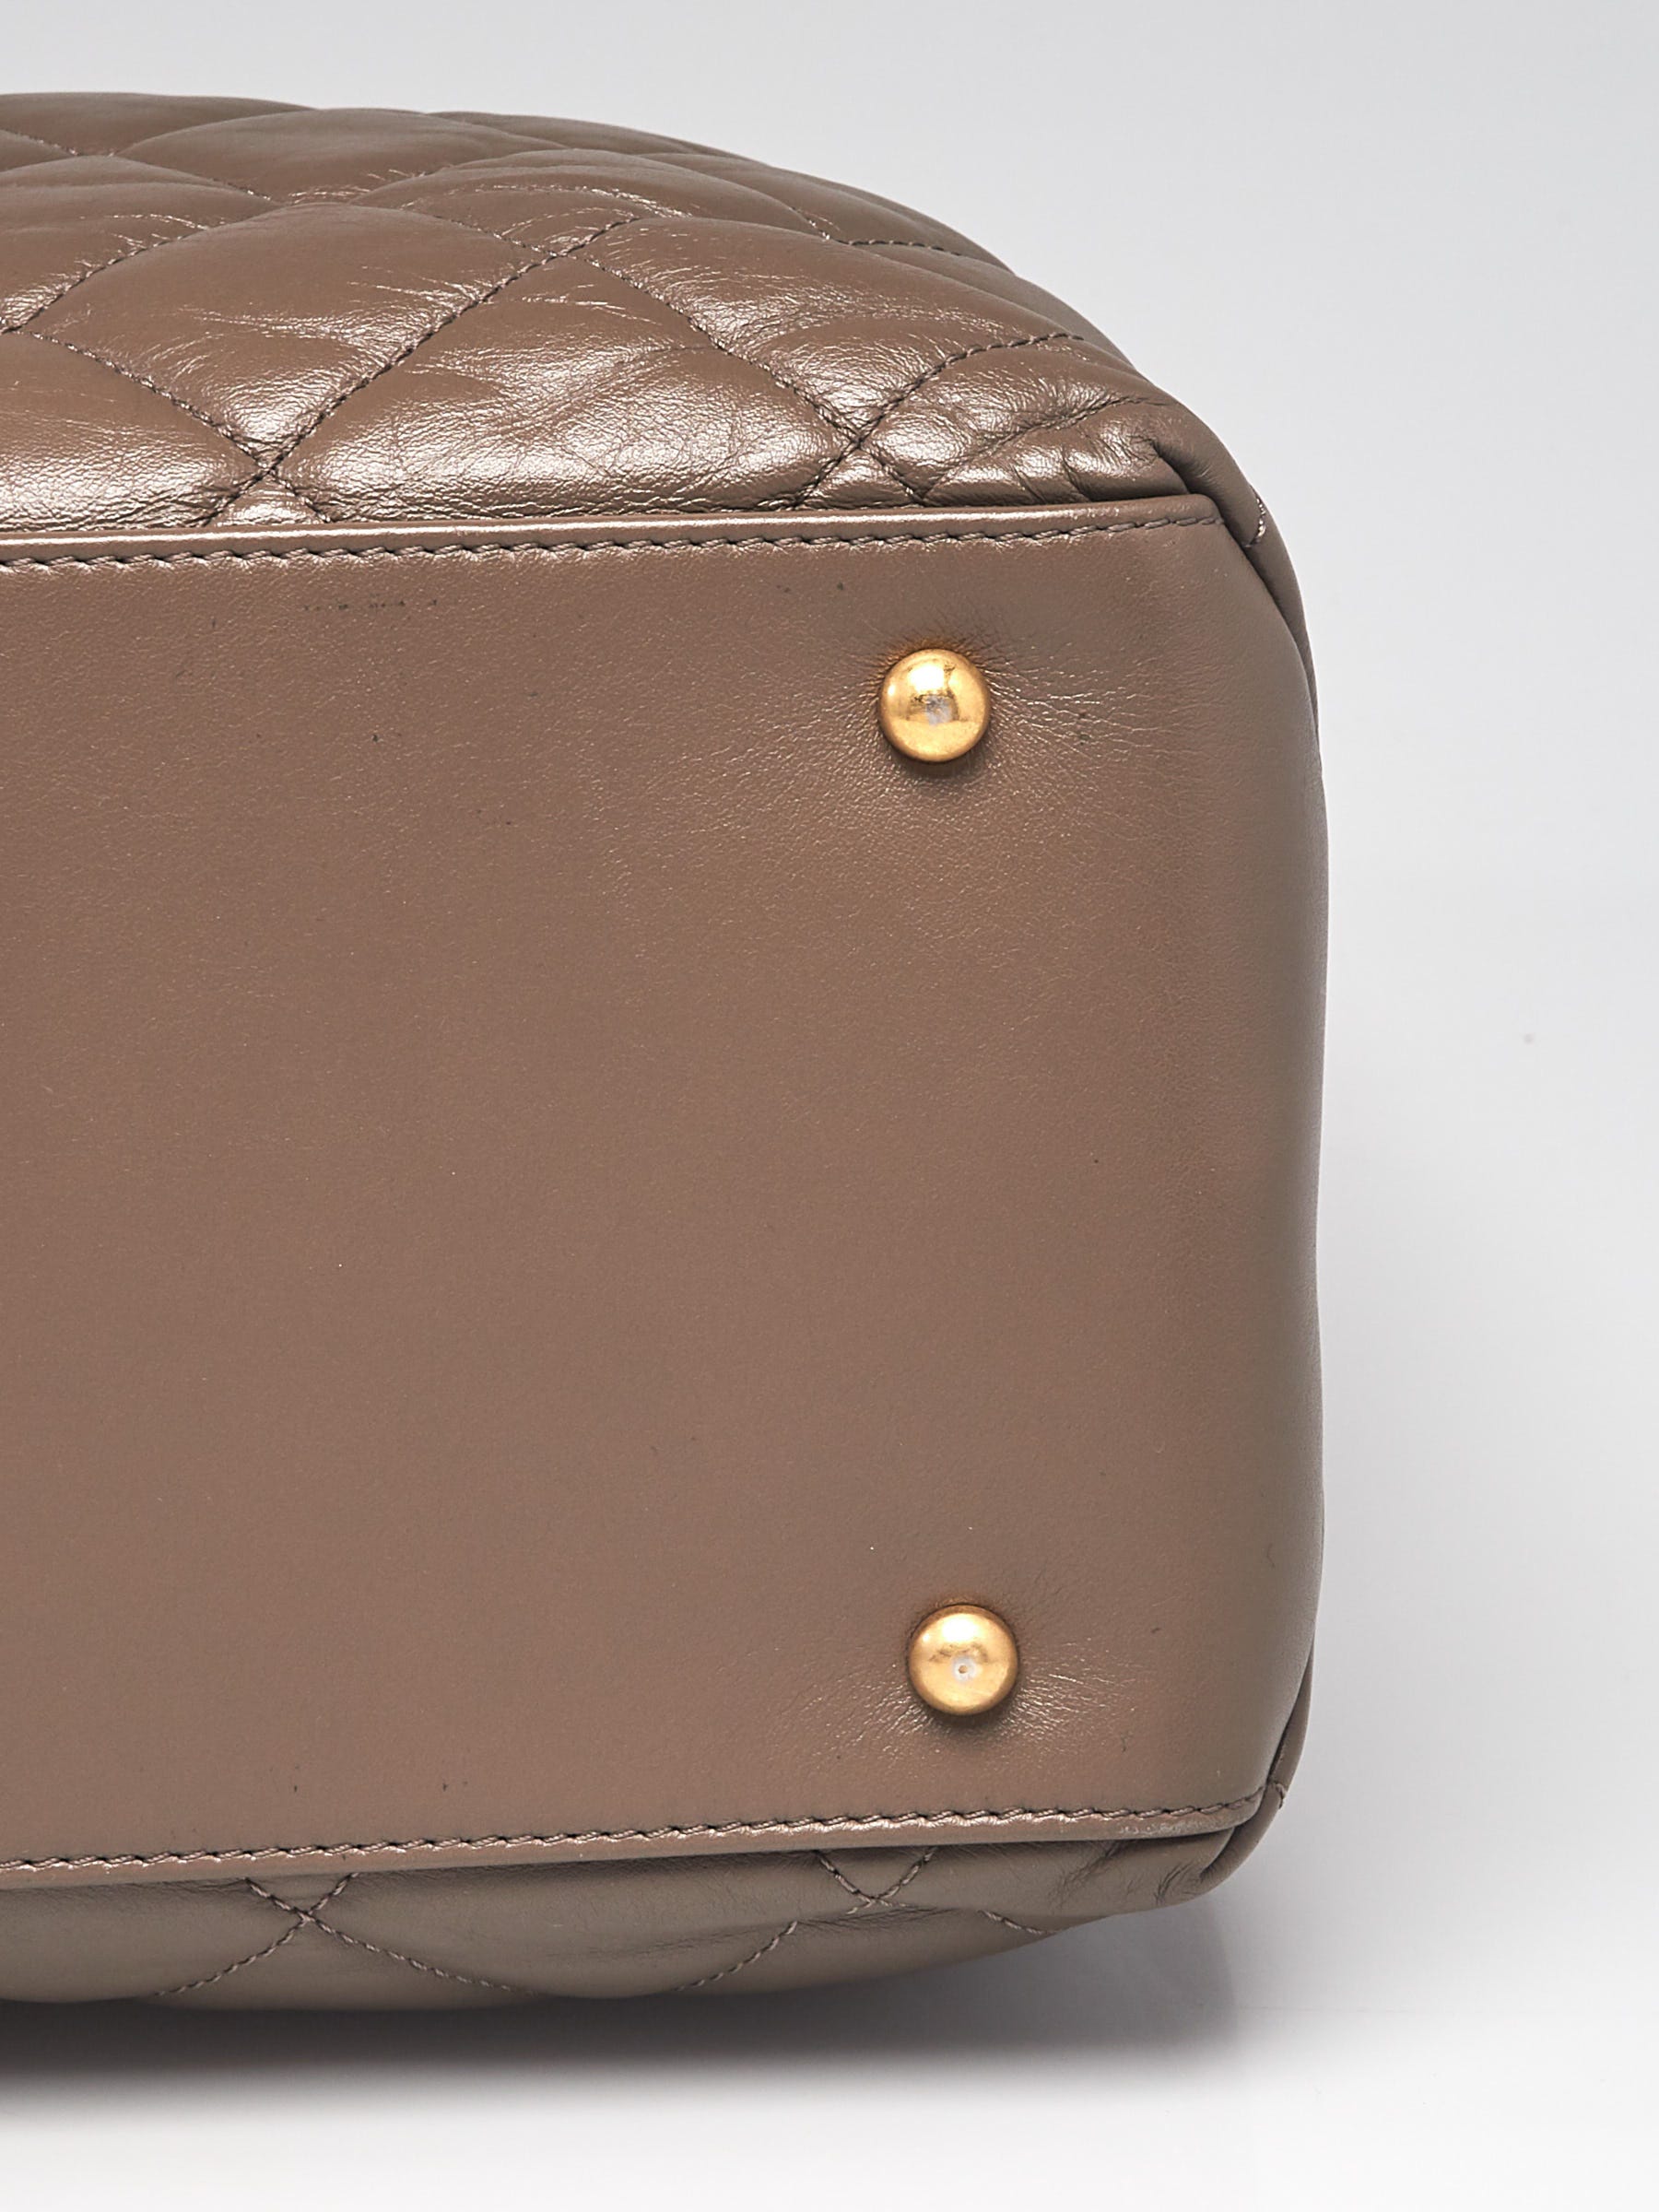 chanel belt bag vintage leather